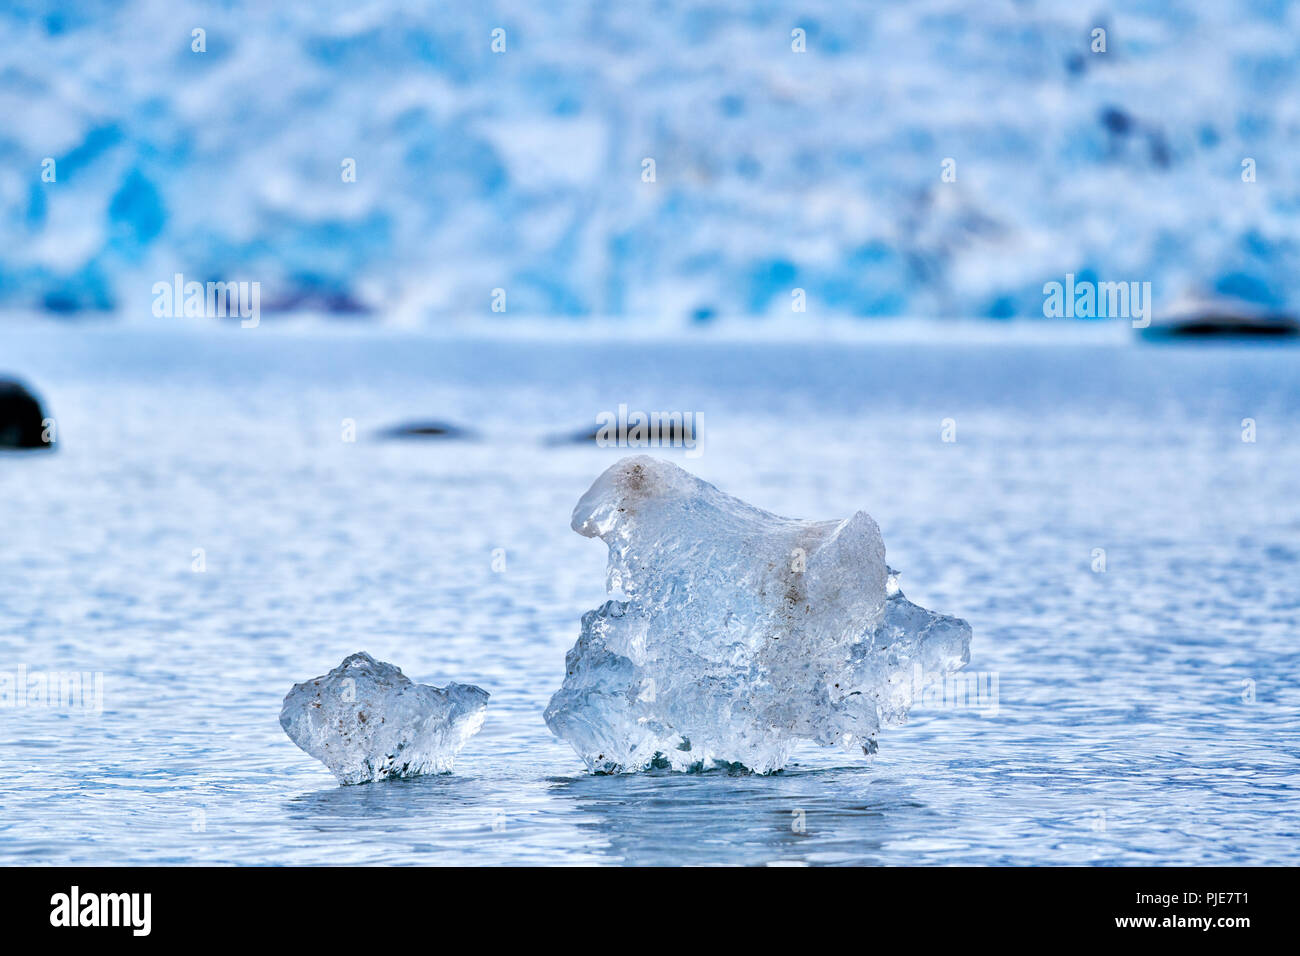 kleine Eisstücke treiben vor Gletscher, Ny Alesund, Spitzbergen, Europa |small pieces of ice flooting in front of glacier, Ny Alesund, Svalbard or Spi Stock Photo